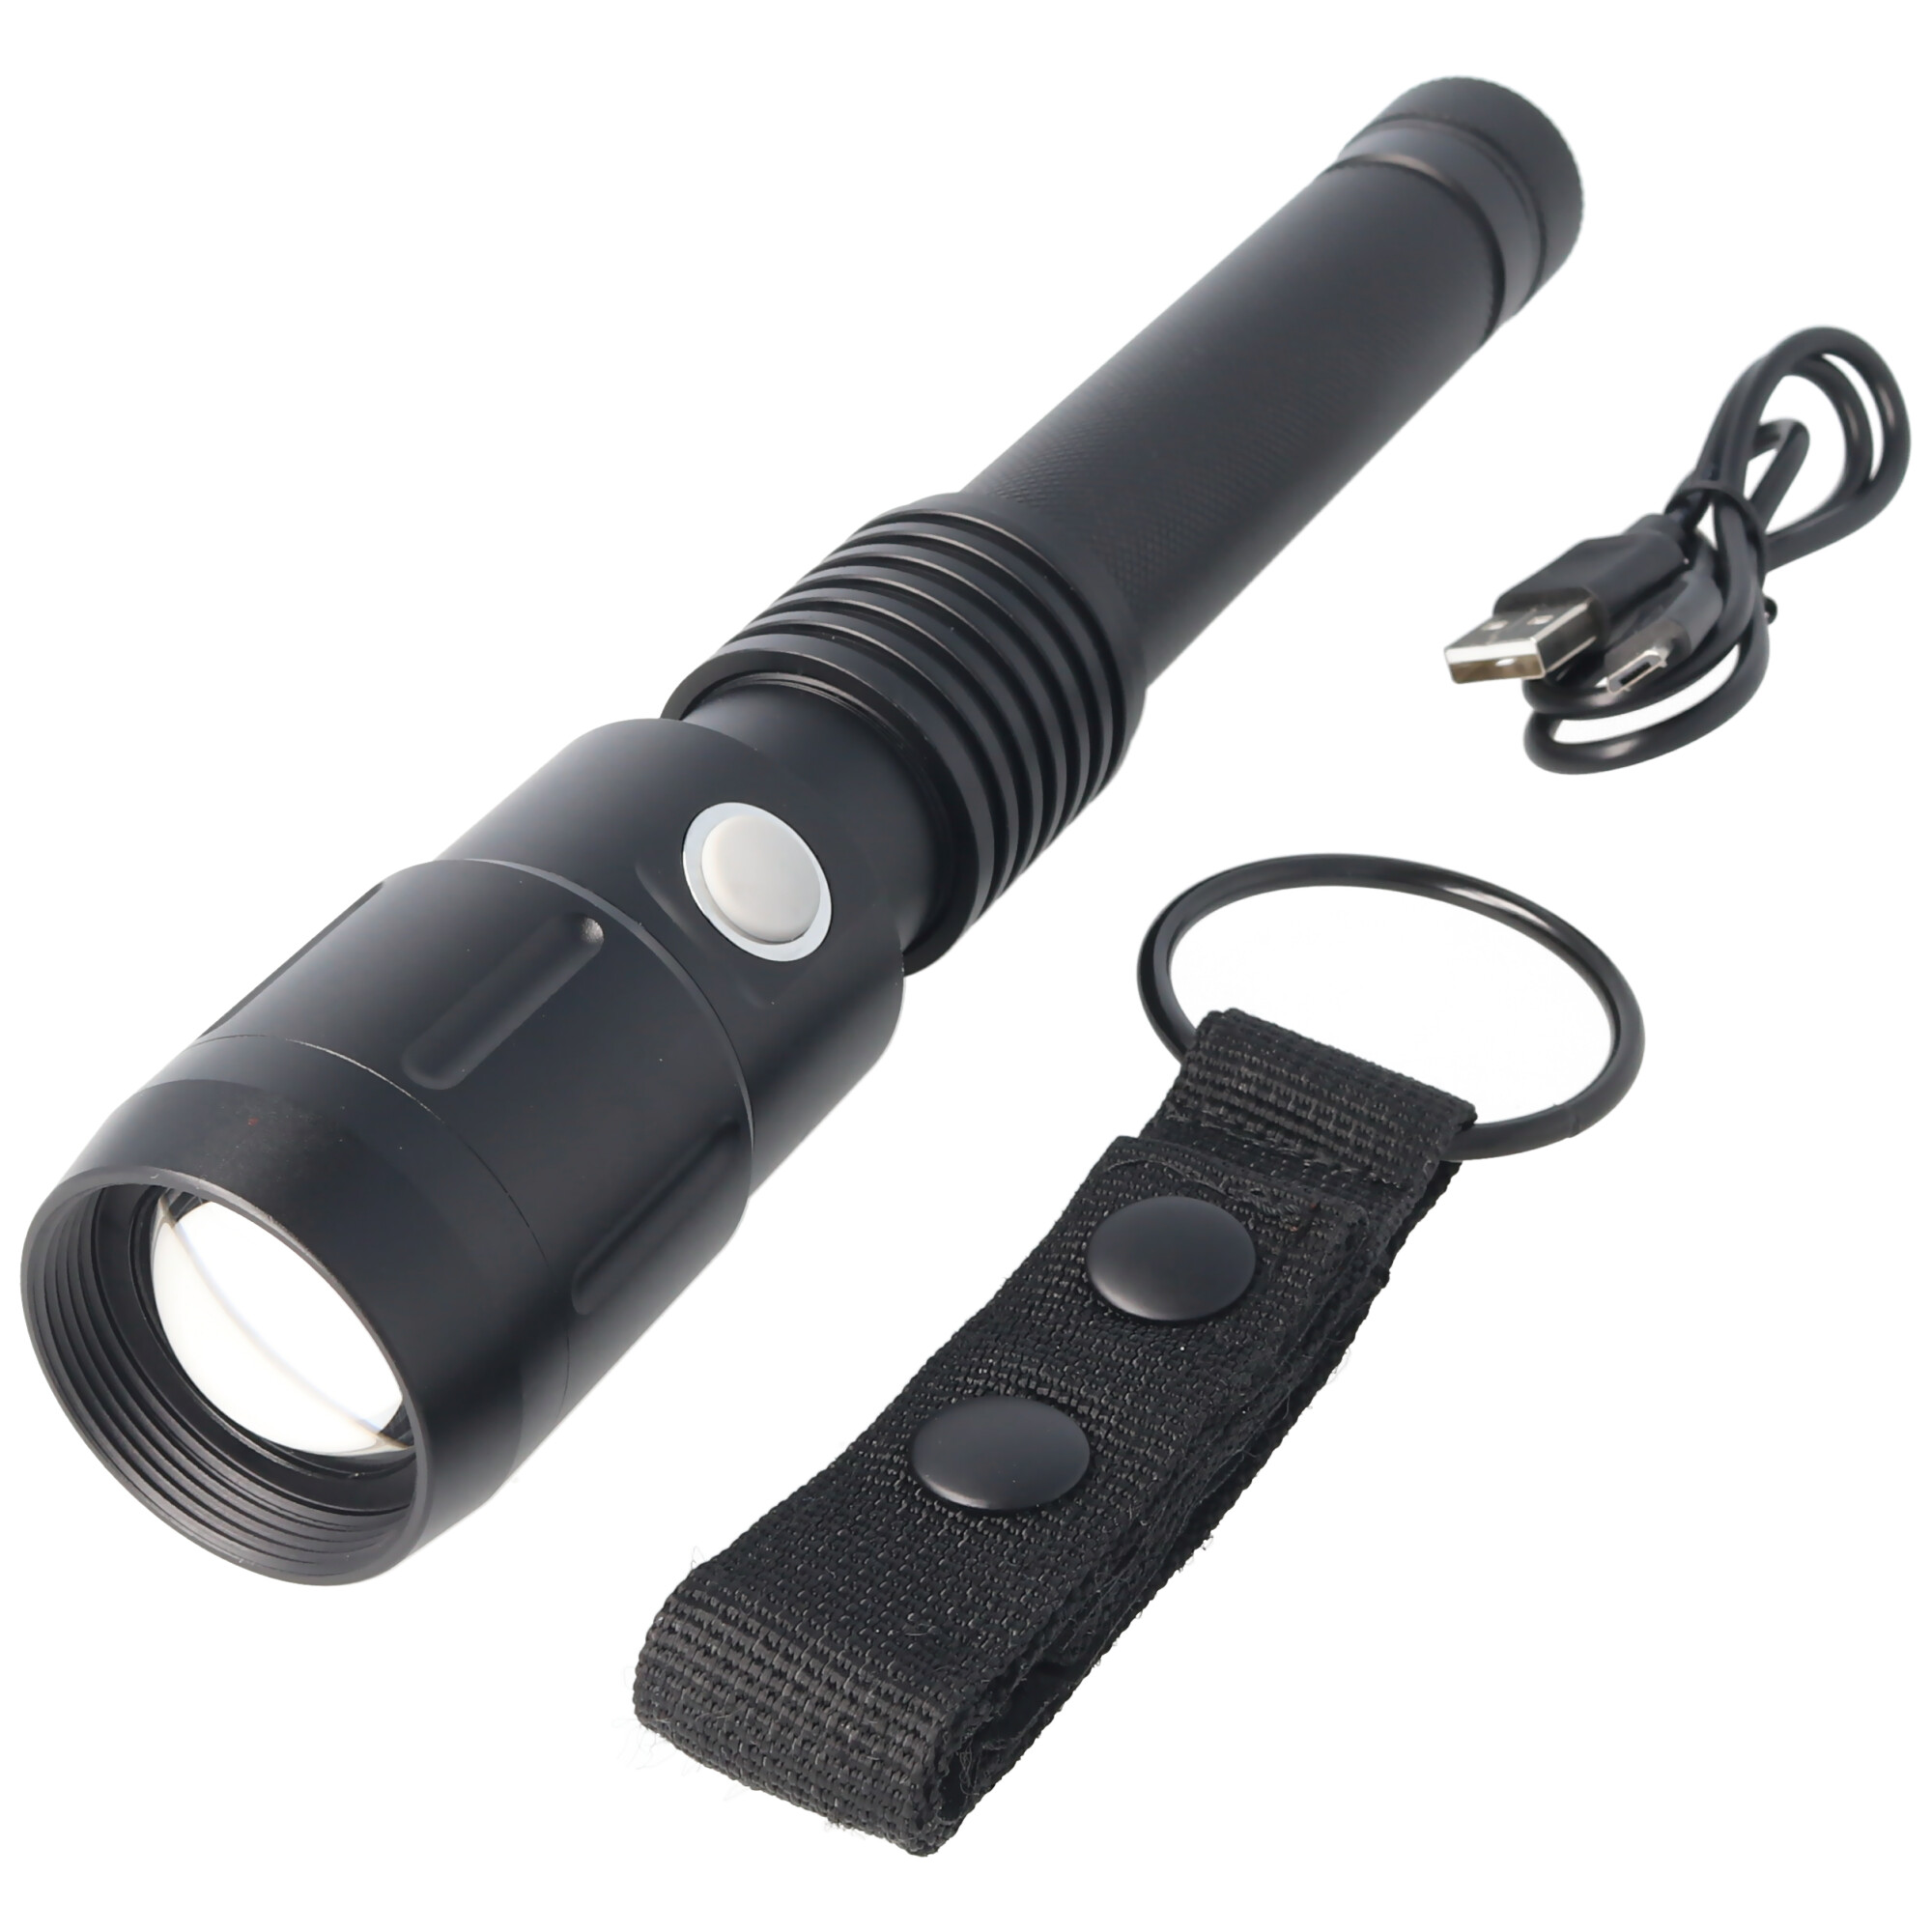 LED Taschenlampe M-FL-006B Maximus 235m Leuchtweite, 1200 Lumen, inklusive 18650 Akku, mit USB Ladefunktion